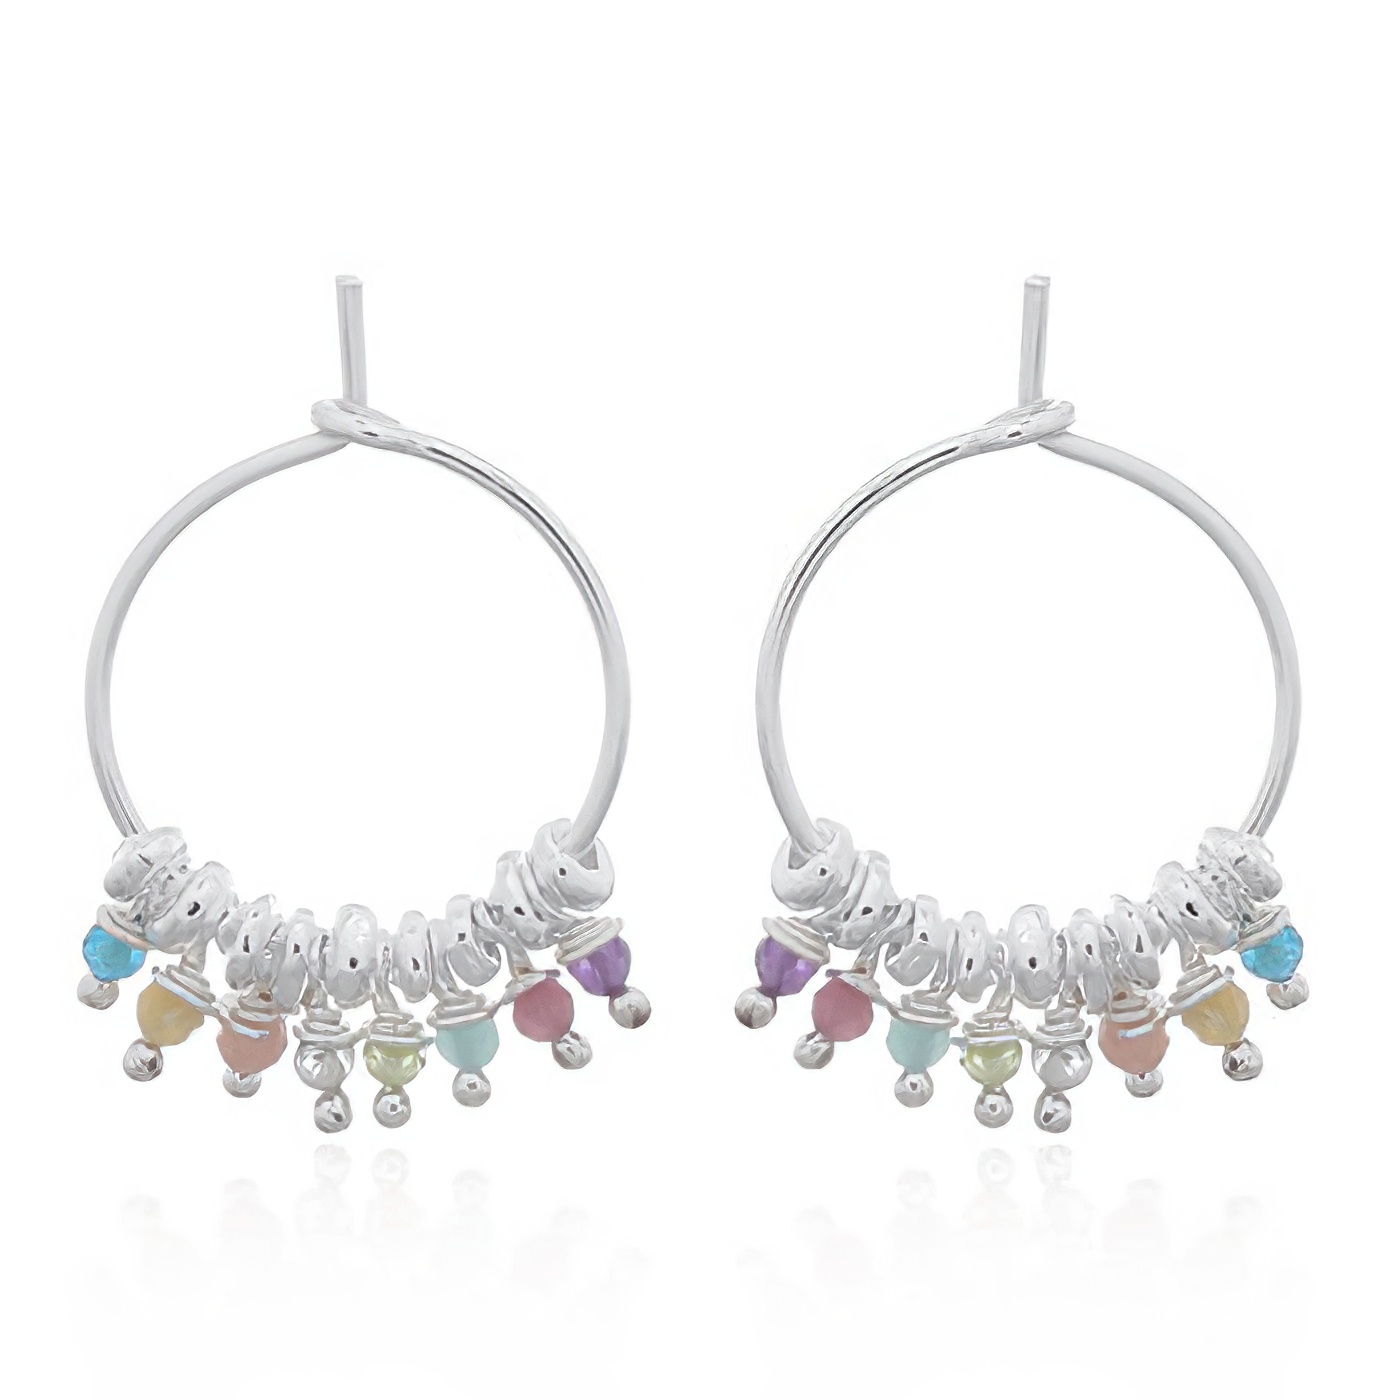 Multi-colored Natural Stones Hoop Earrings 925 Silver by BeYindi 